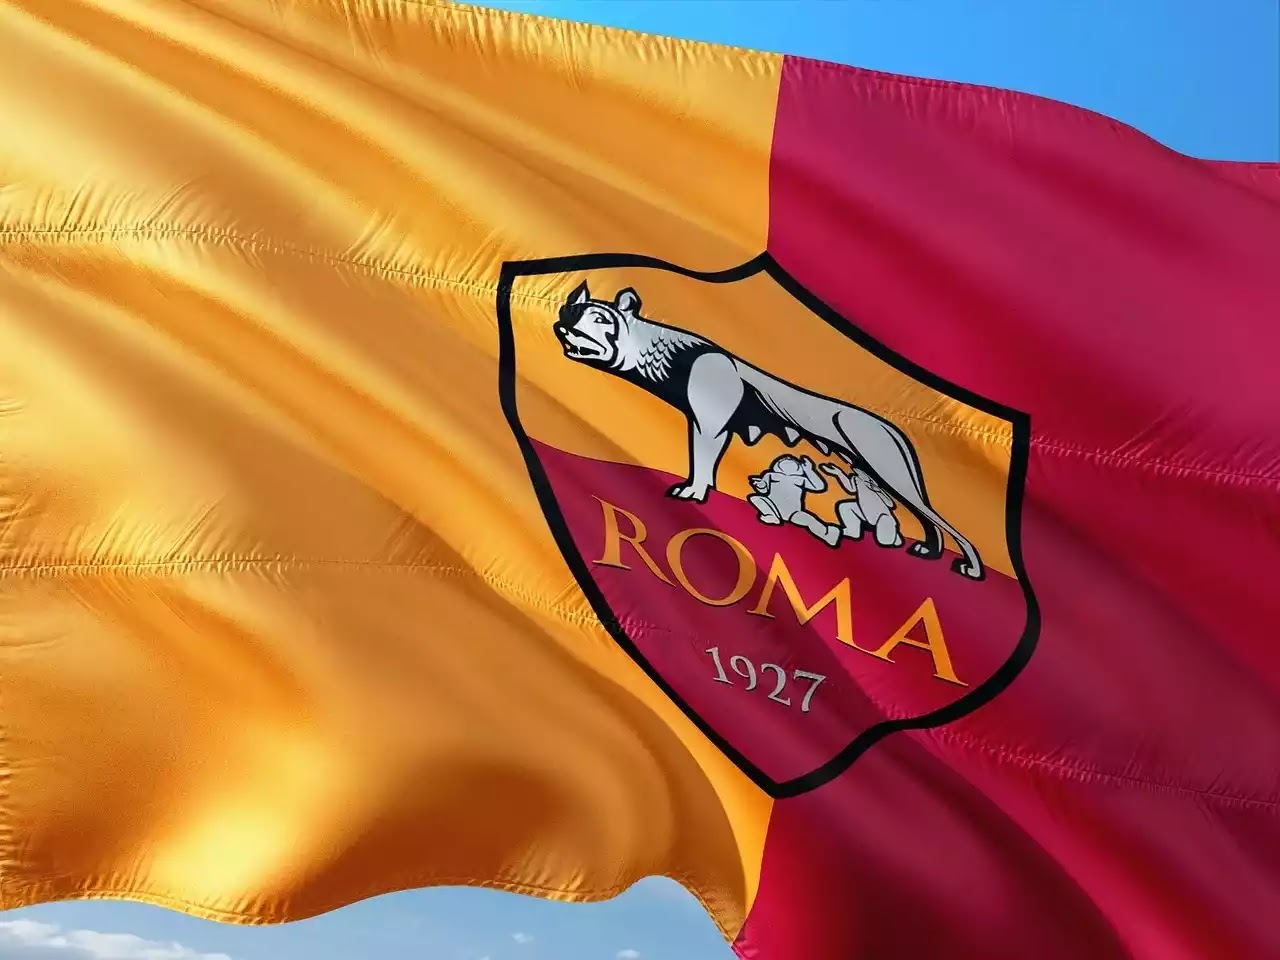 FC Rome President intervenes to settle the Wijnaldum deal